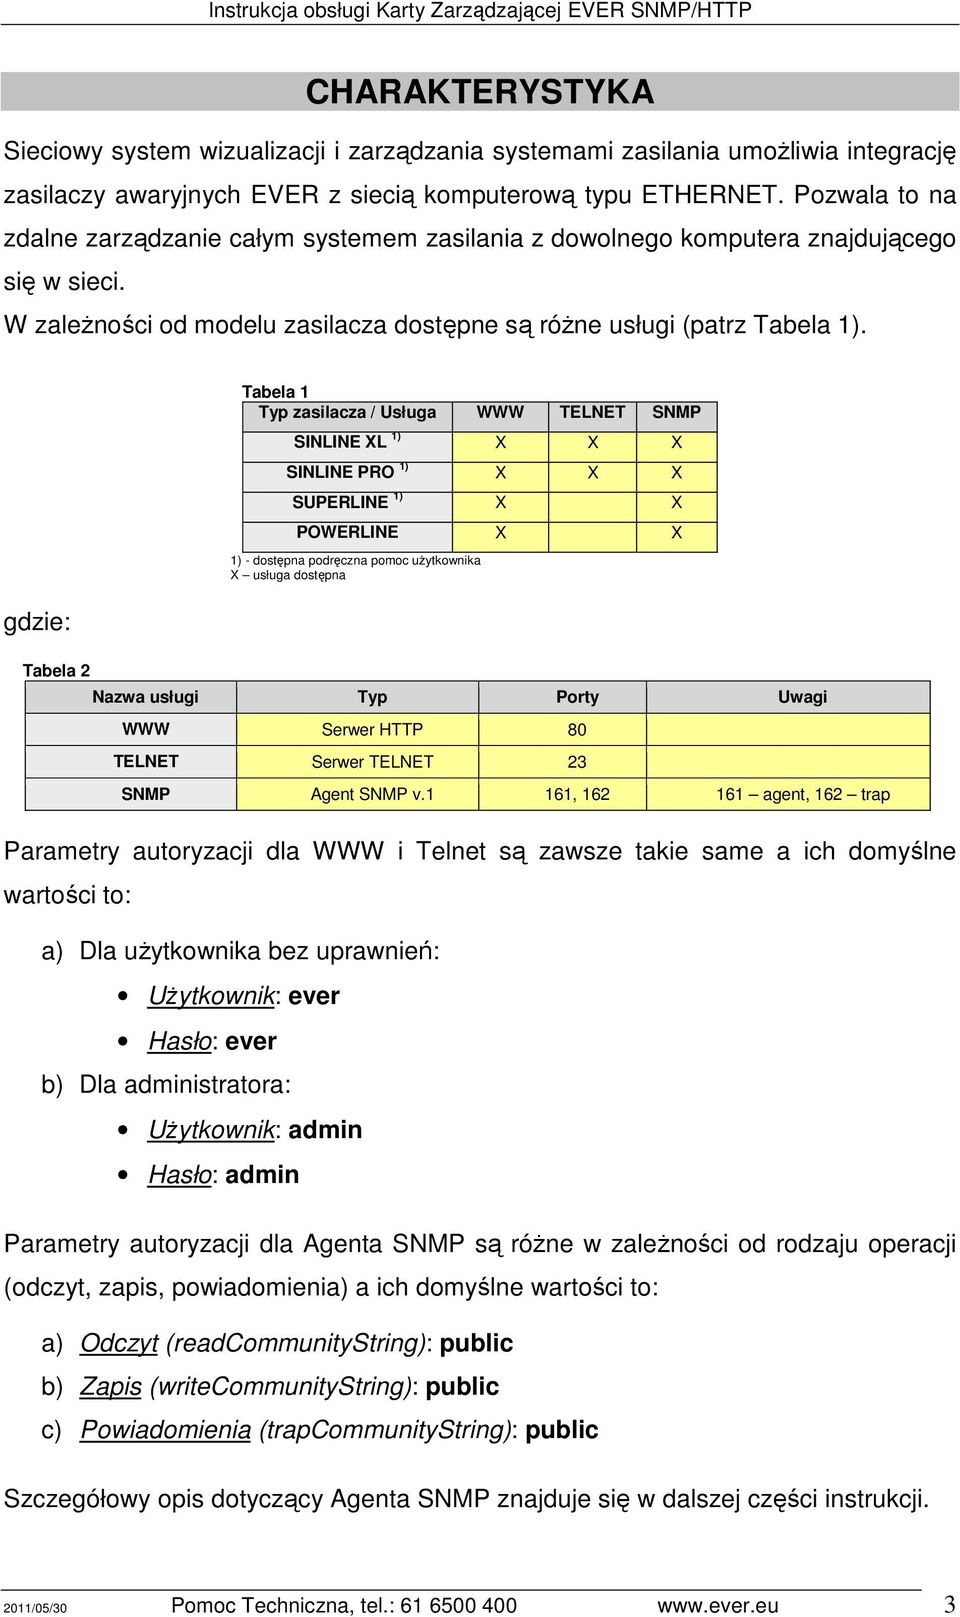 gdzie: Tabela 2 Tabela 1 Typ zasilacza / Usługa WWW TELNET SNMP SINLINE XL 1) X X X SINLINE PRO 1) X X X SUPERLINE 1) X X POWERLINE X X 1) - dostępna podręczna pomoc użytkownika X usługa dostępna